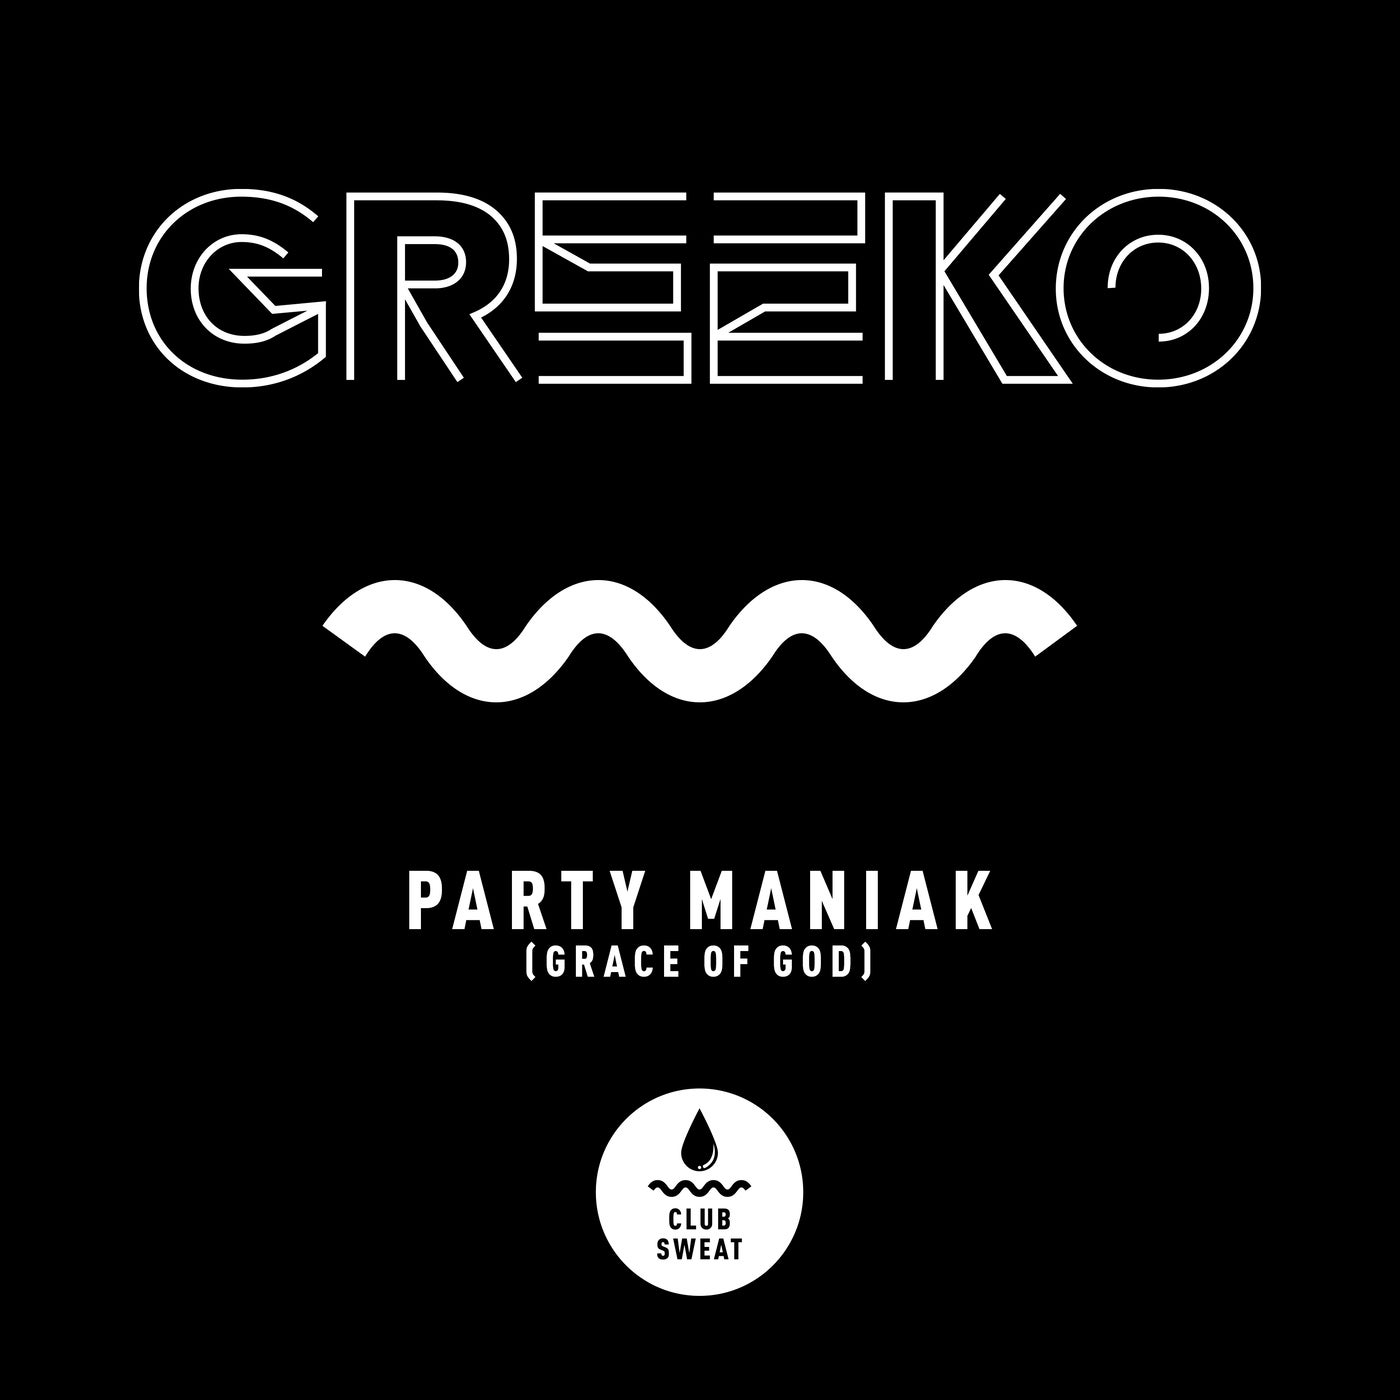 Party Maniak (Grace of God)